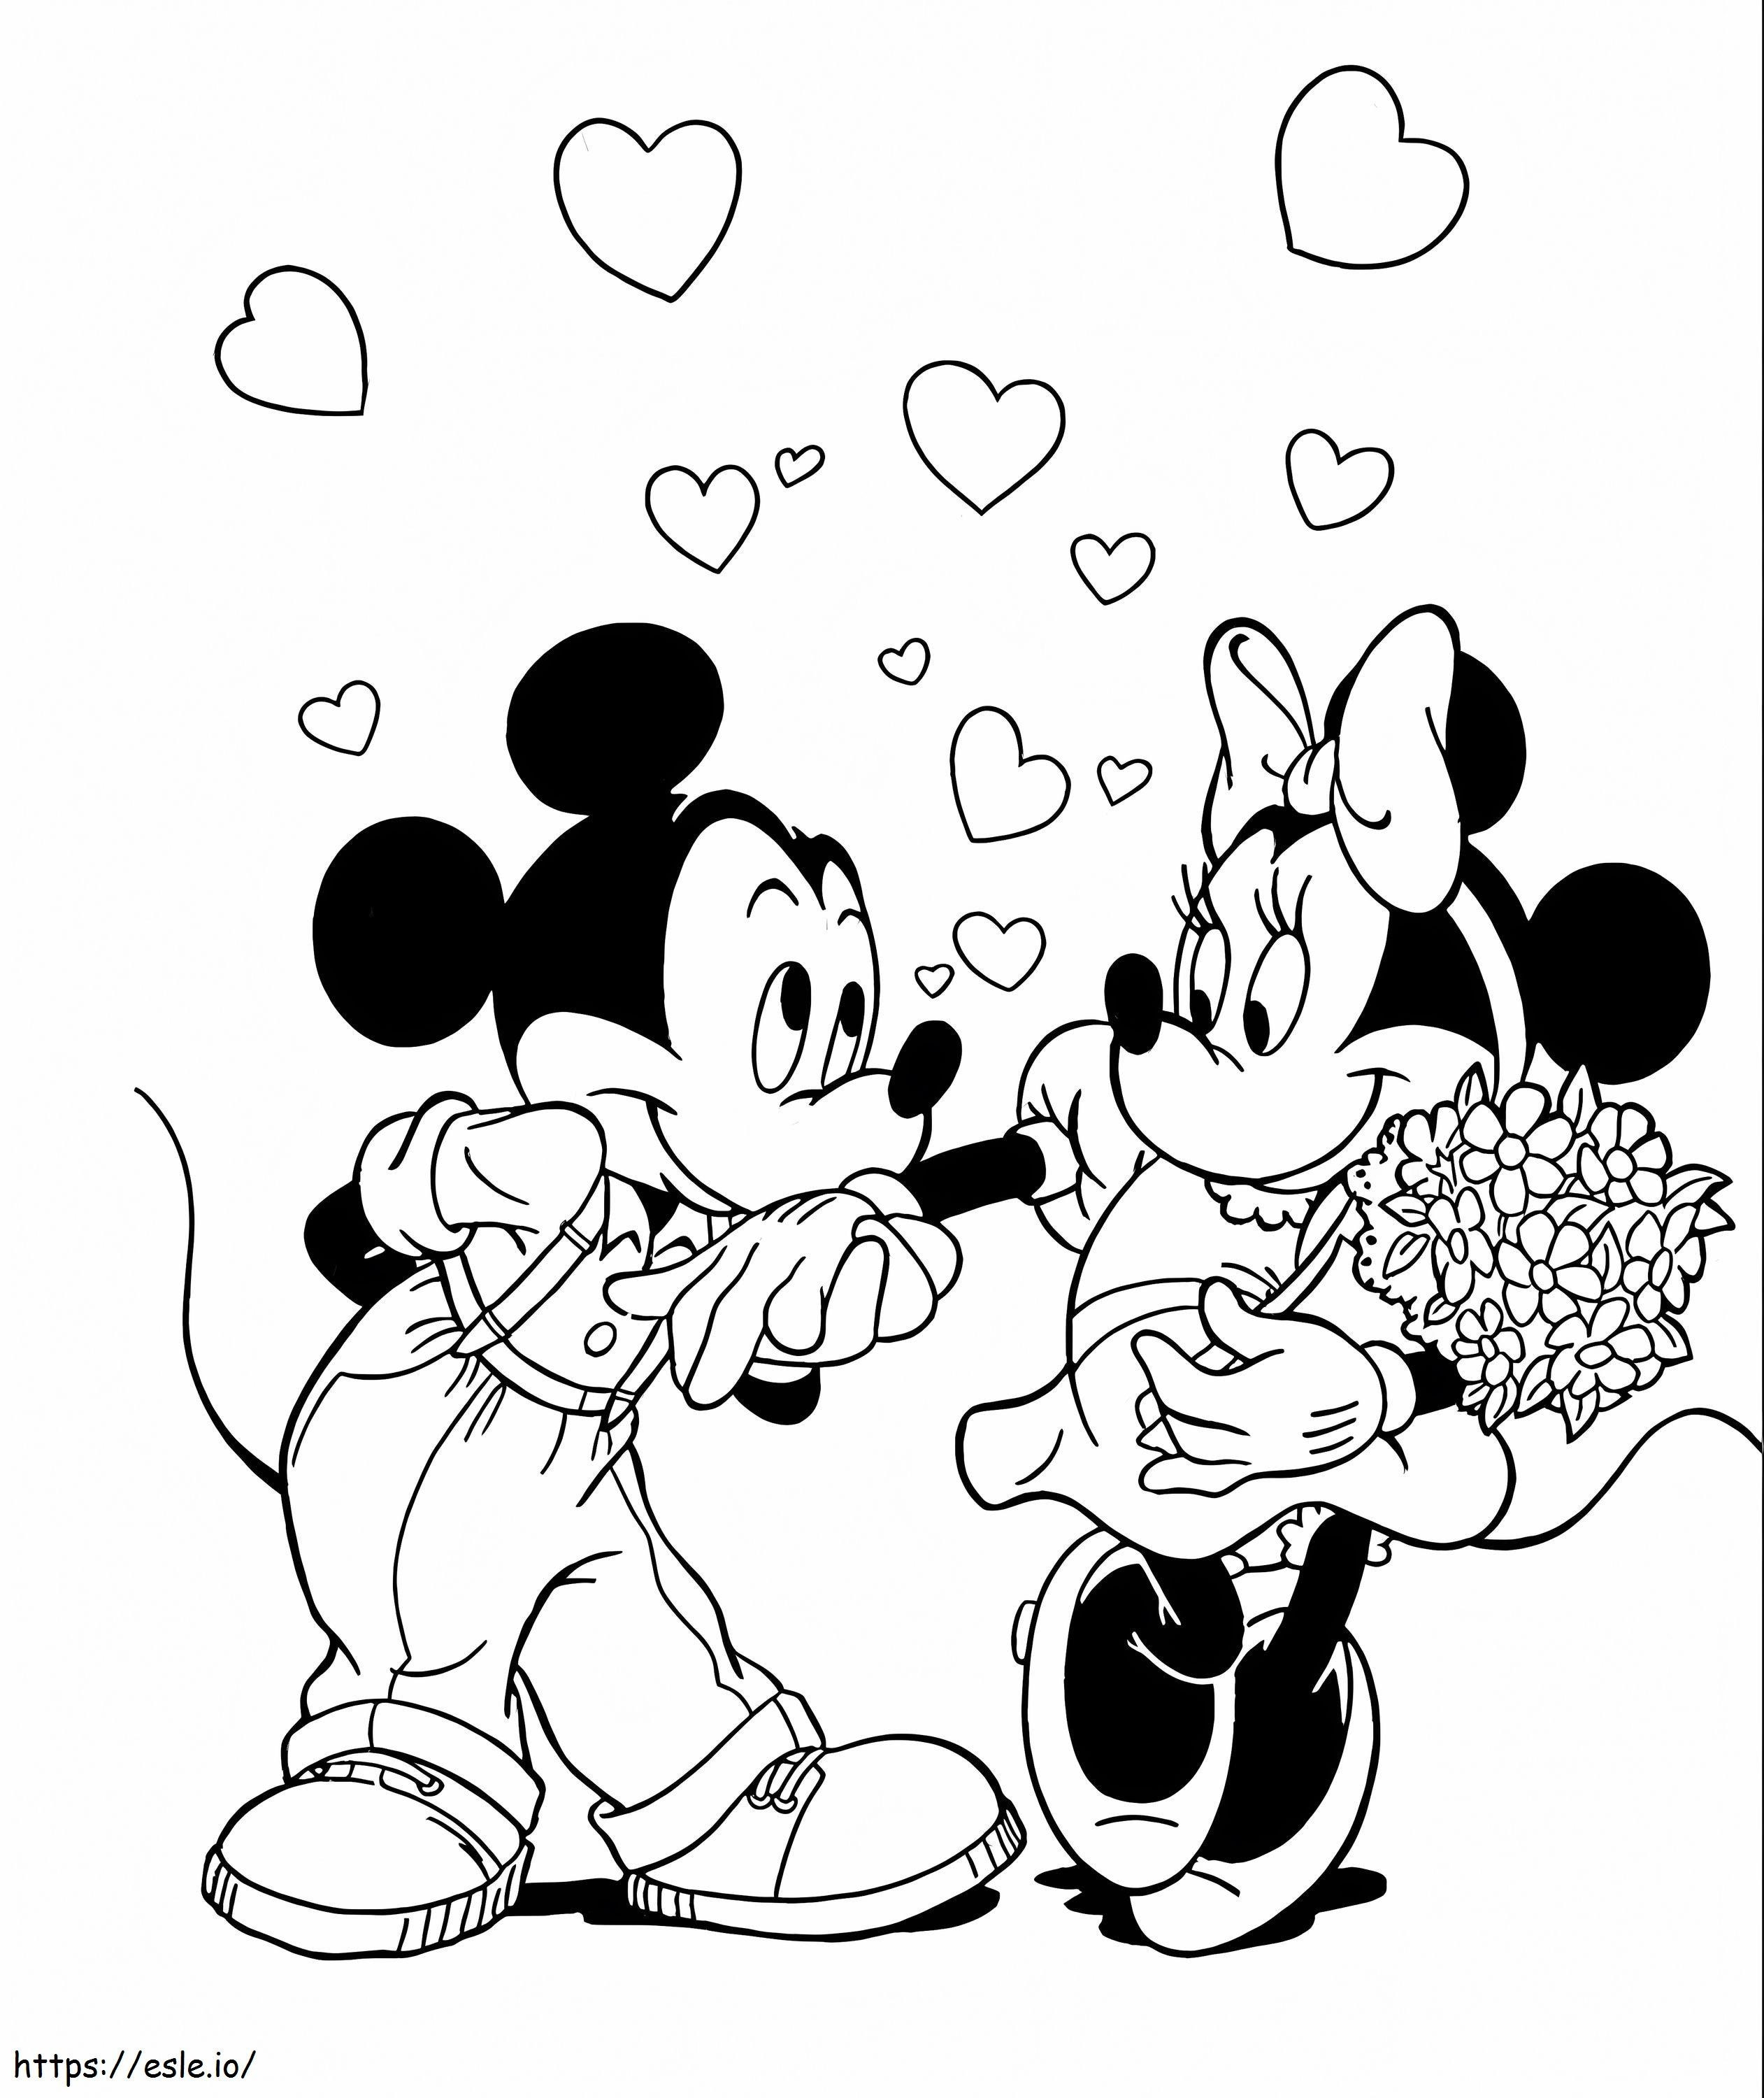 Mickey Mouse y Minnie Mouse sonriendo sosteniendo un ramo de flores para colorear